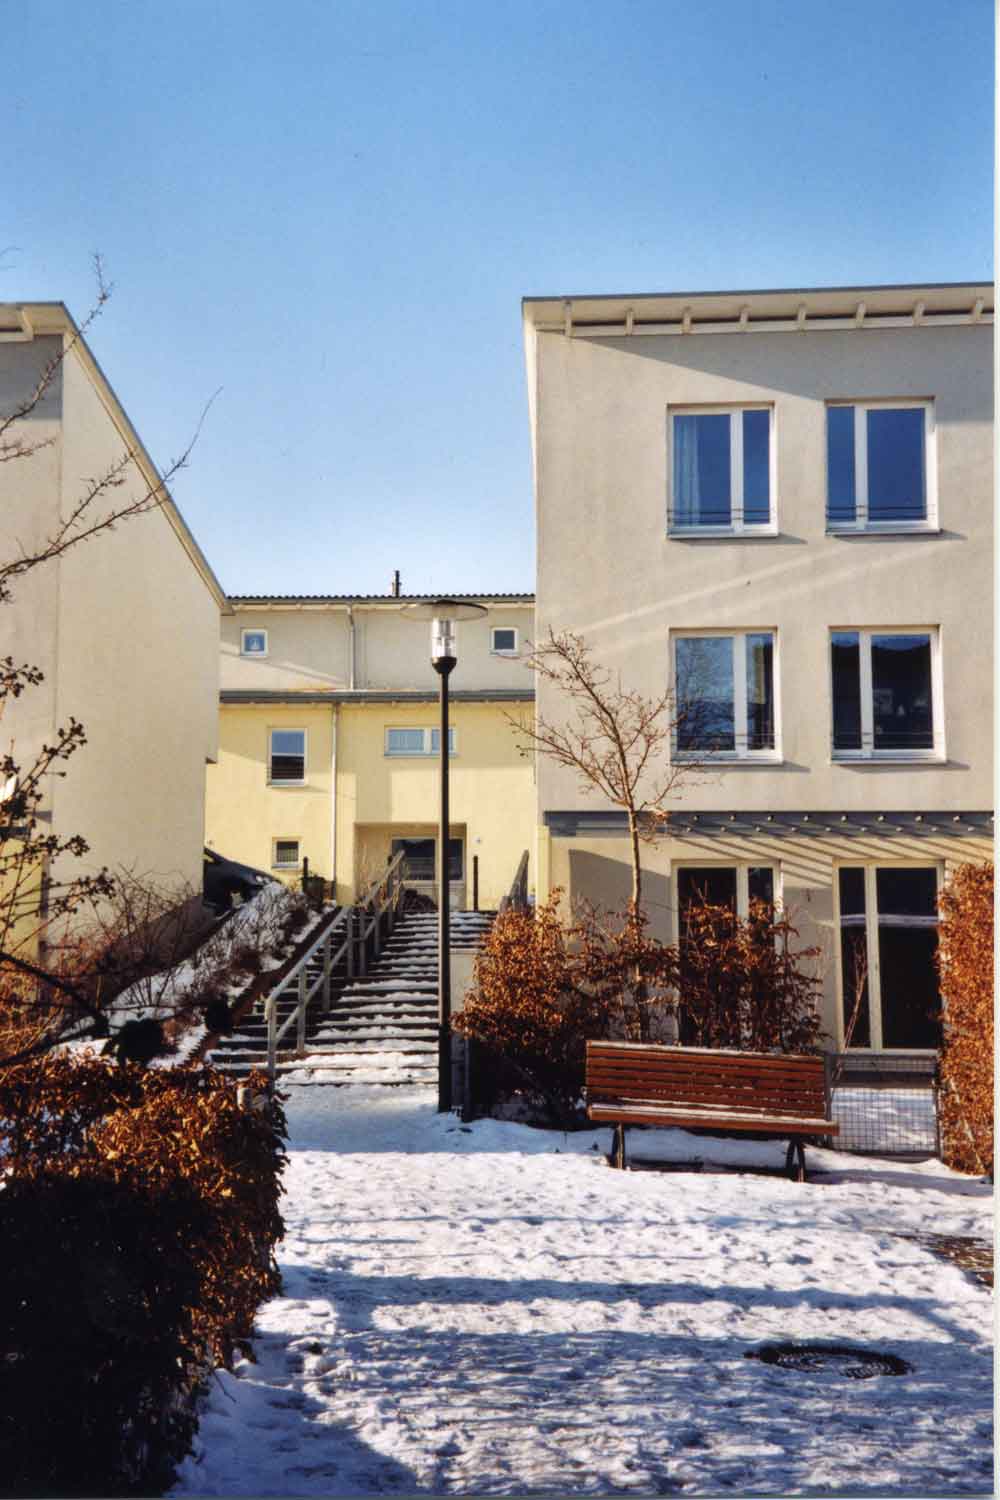 Foto, farbig: Rechts ein kleines dreigeschossiges Haus mit Flachdach, links eine Freitreppe, davor braun belaubte Büsche und eine Parkbank, es liegt Schnee, der Himmel ist wolkenlos.